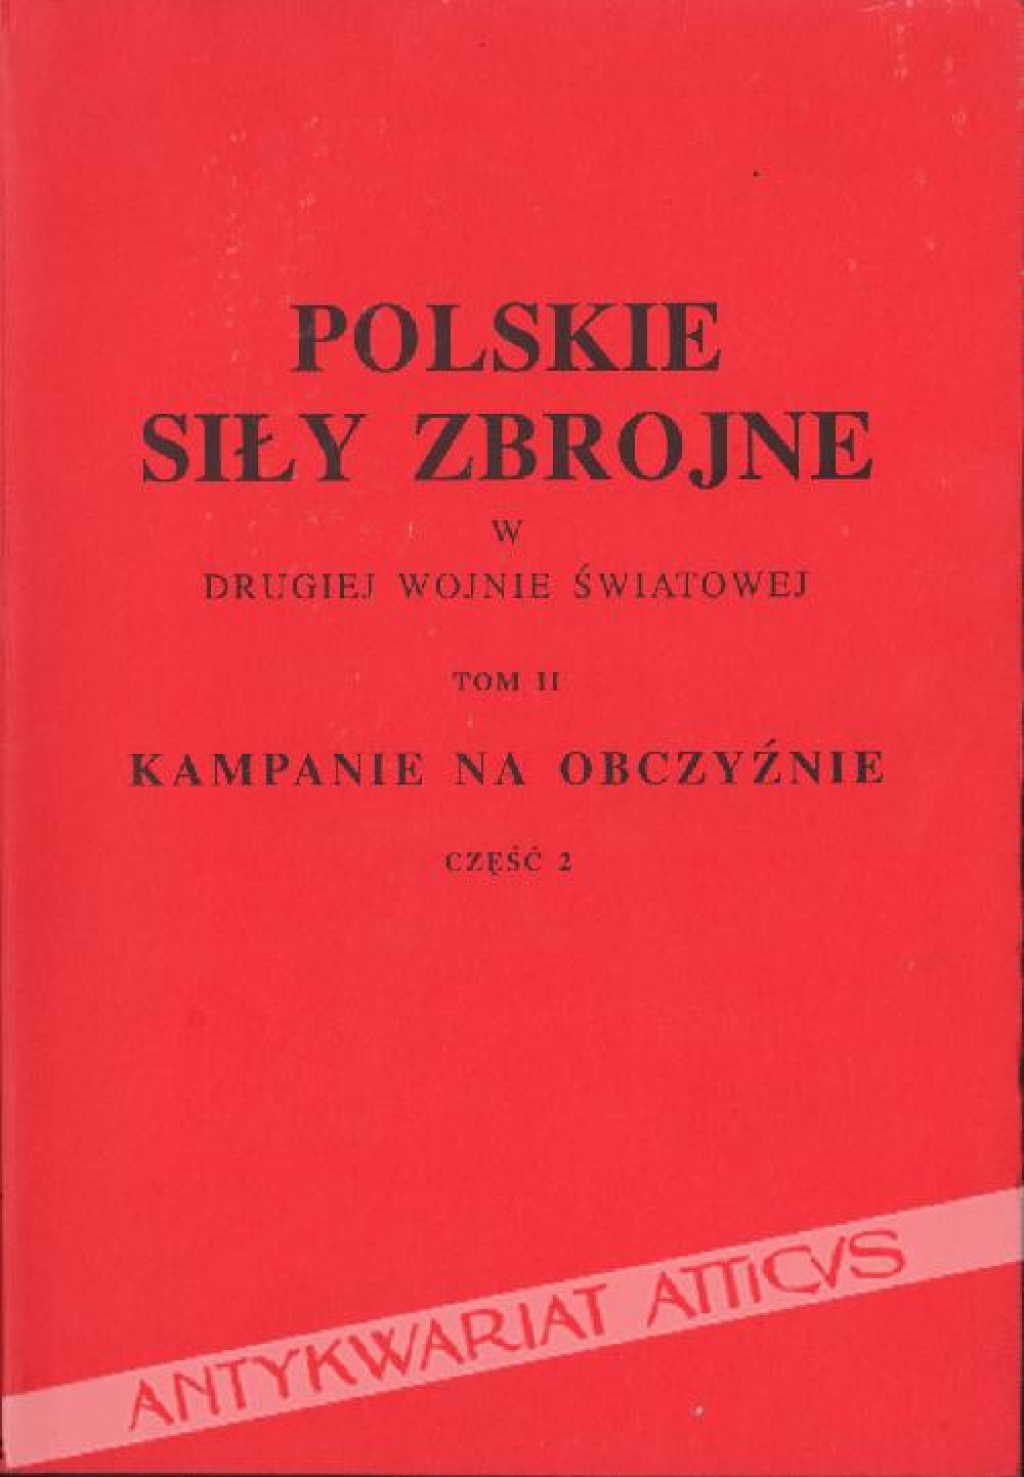 Polskie siły zbrojne w drugiej wojnie światowej, t. II, Kampanie na obczyźnie, cz. 2